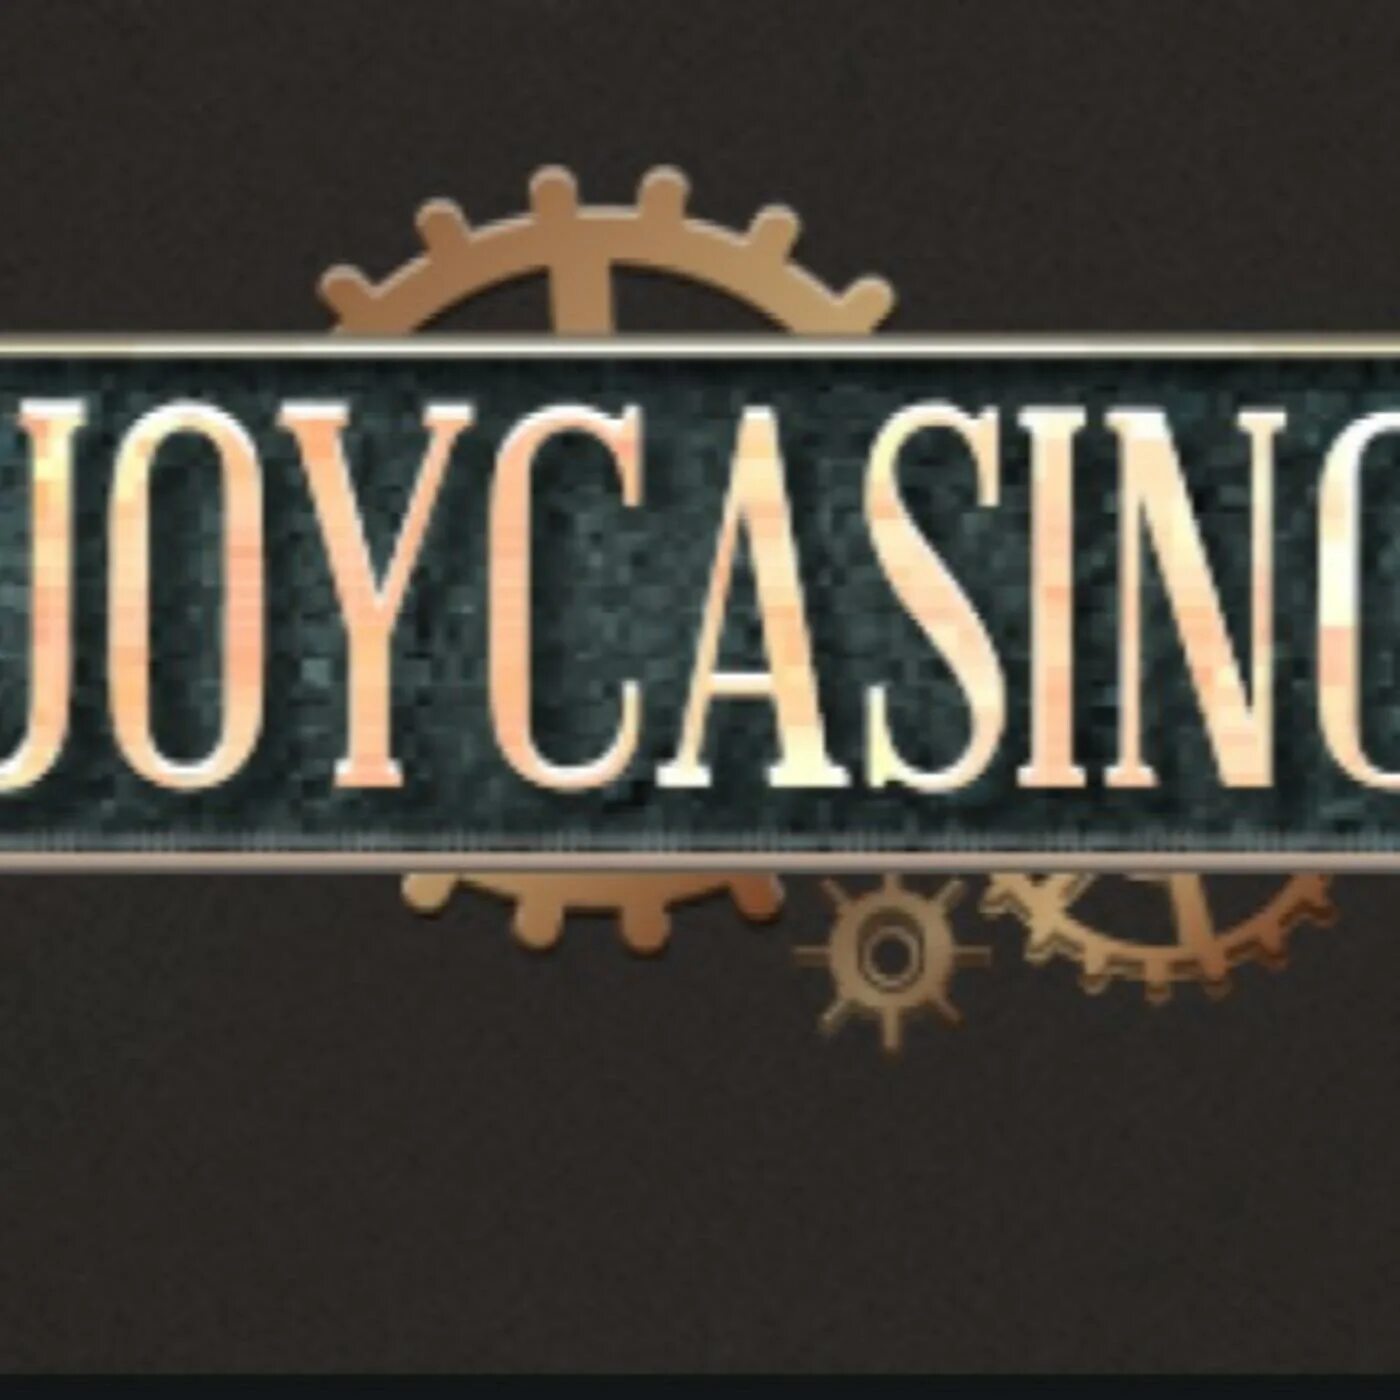 Joycasino 377joycasino top. Joycasino. Джой казино. Joycasino logo. Joycasino 1423.